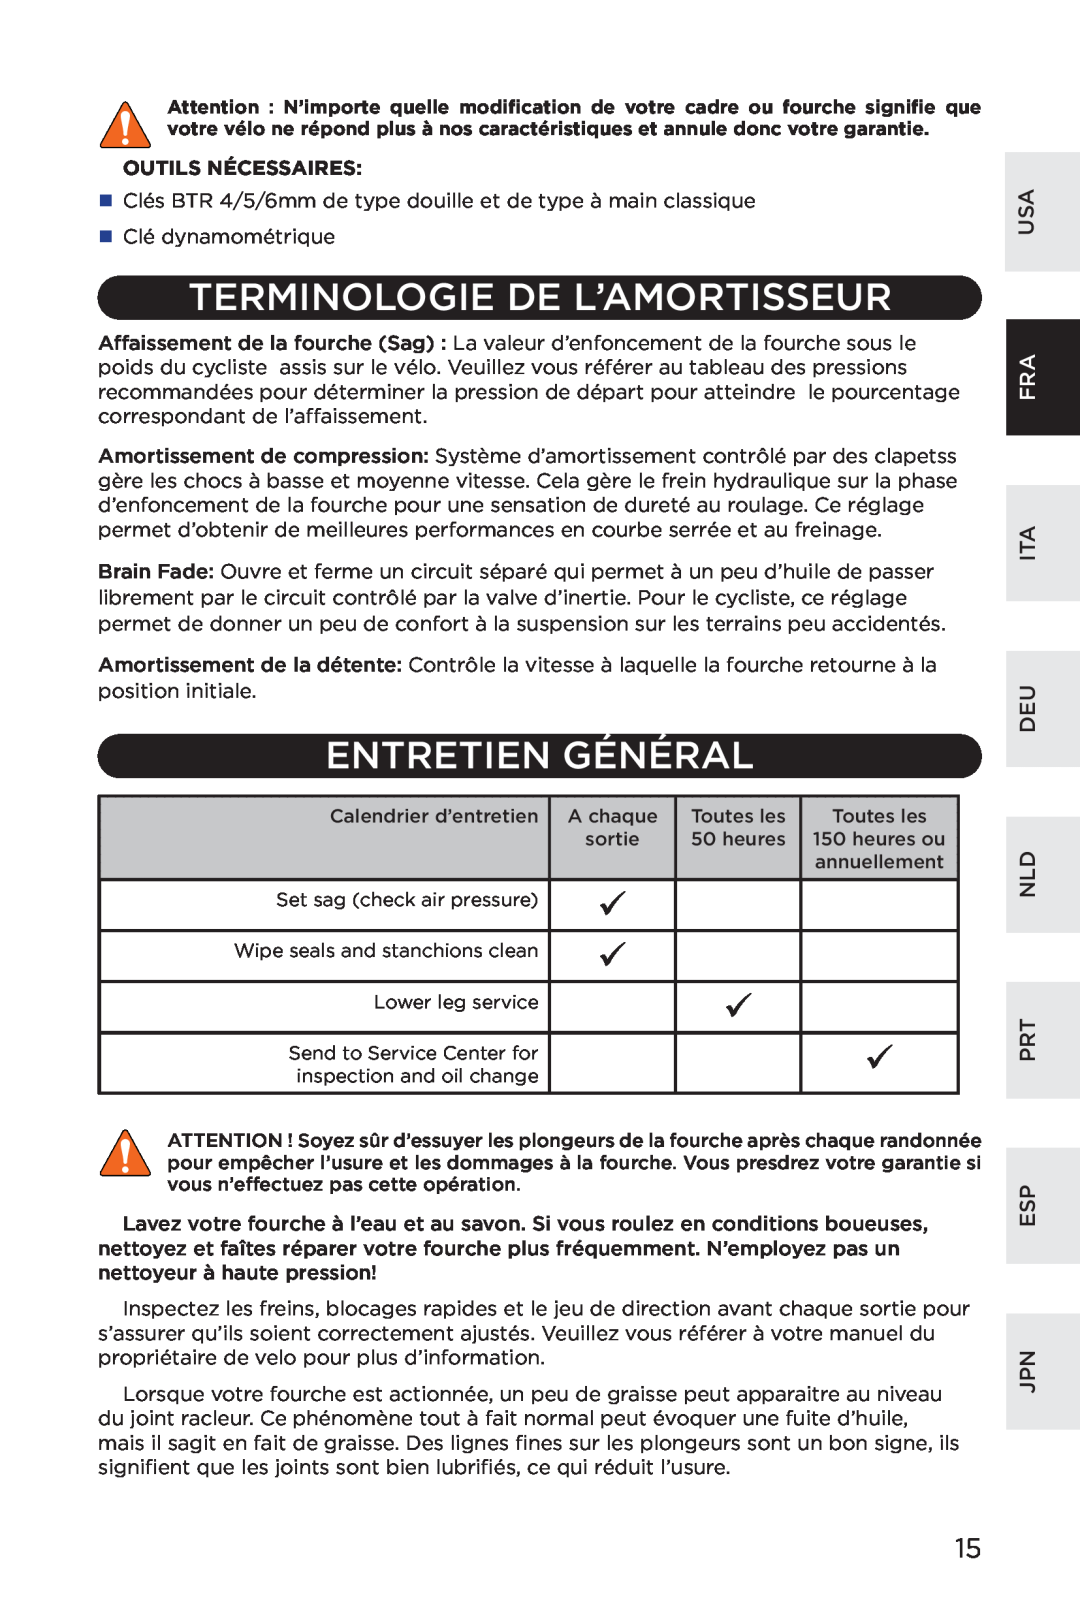 Specialized AFR E100 manual Terminologie De L’Amortisseur, Entretien Général, Outils Nécessaires, Ita Deu Nld Prt Esp Jpn 